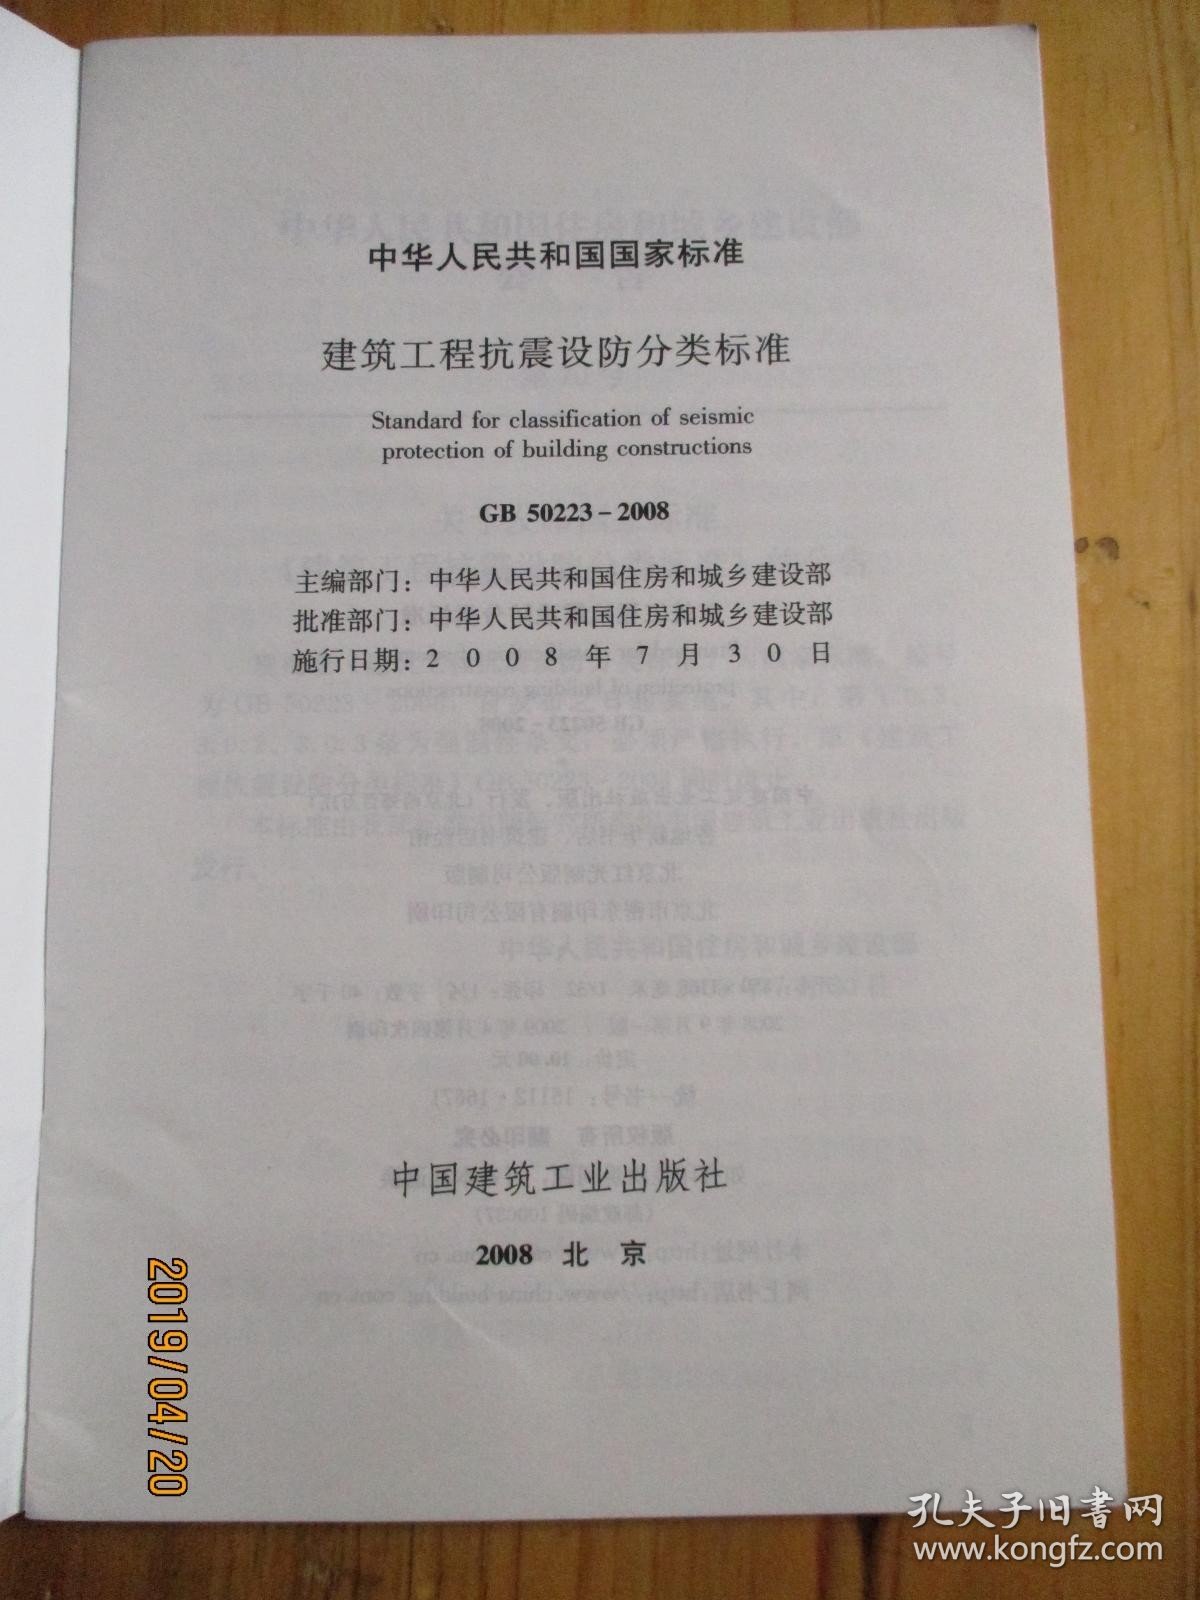 中华人民共和国国家标准 GB 50233-2008 建筑工程抗震设防分类标准【如图72-2